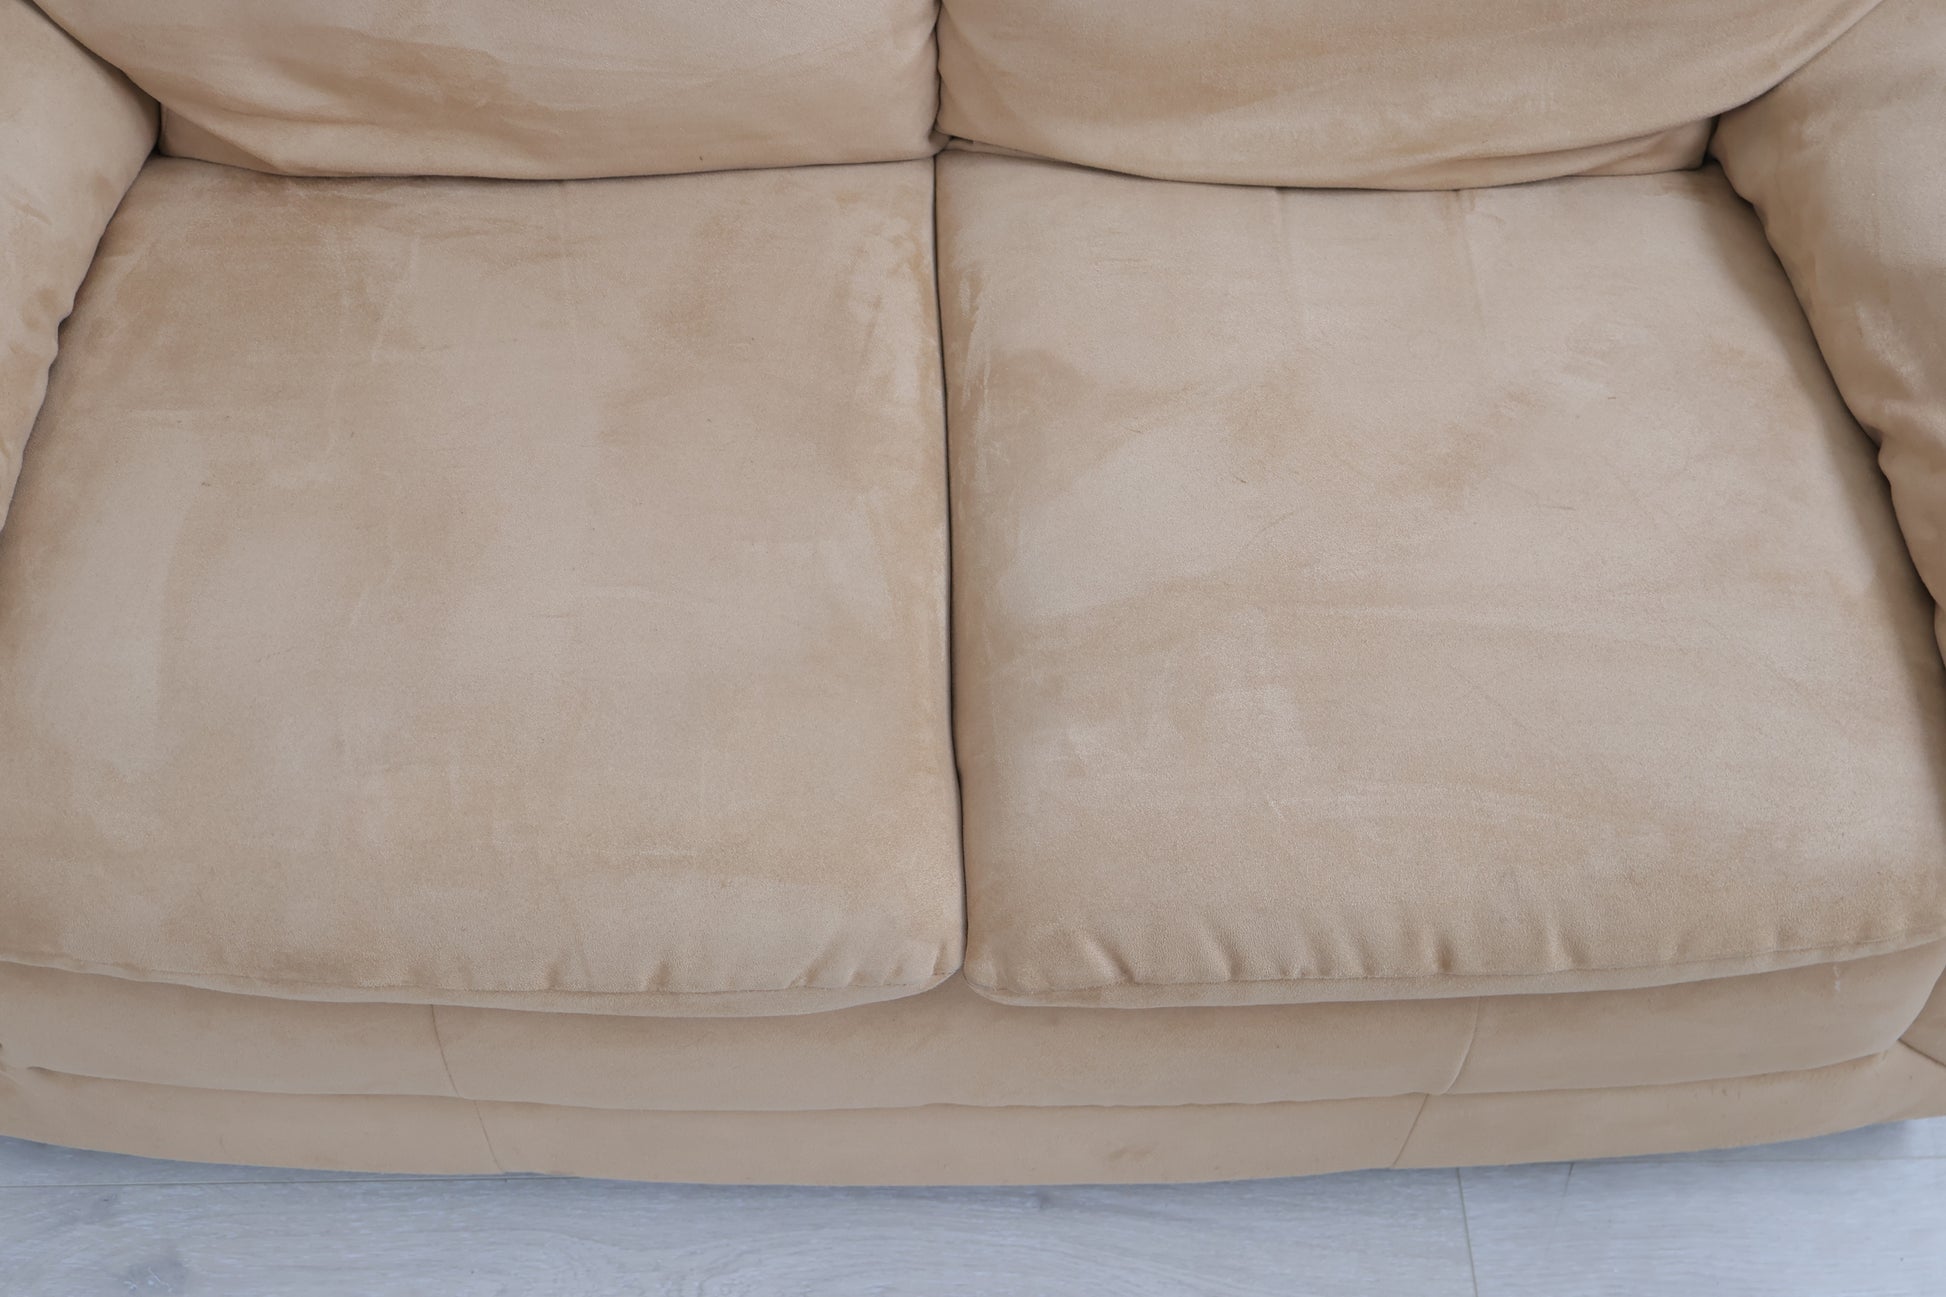 Nyrenset | Brun/beige 2-seter sofa i semsket skinn